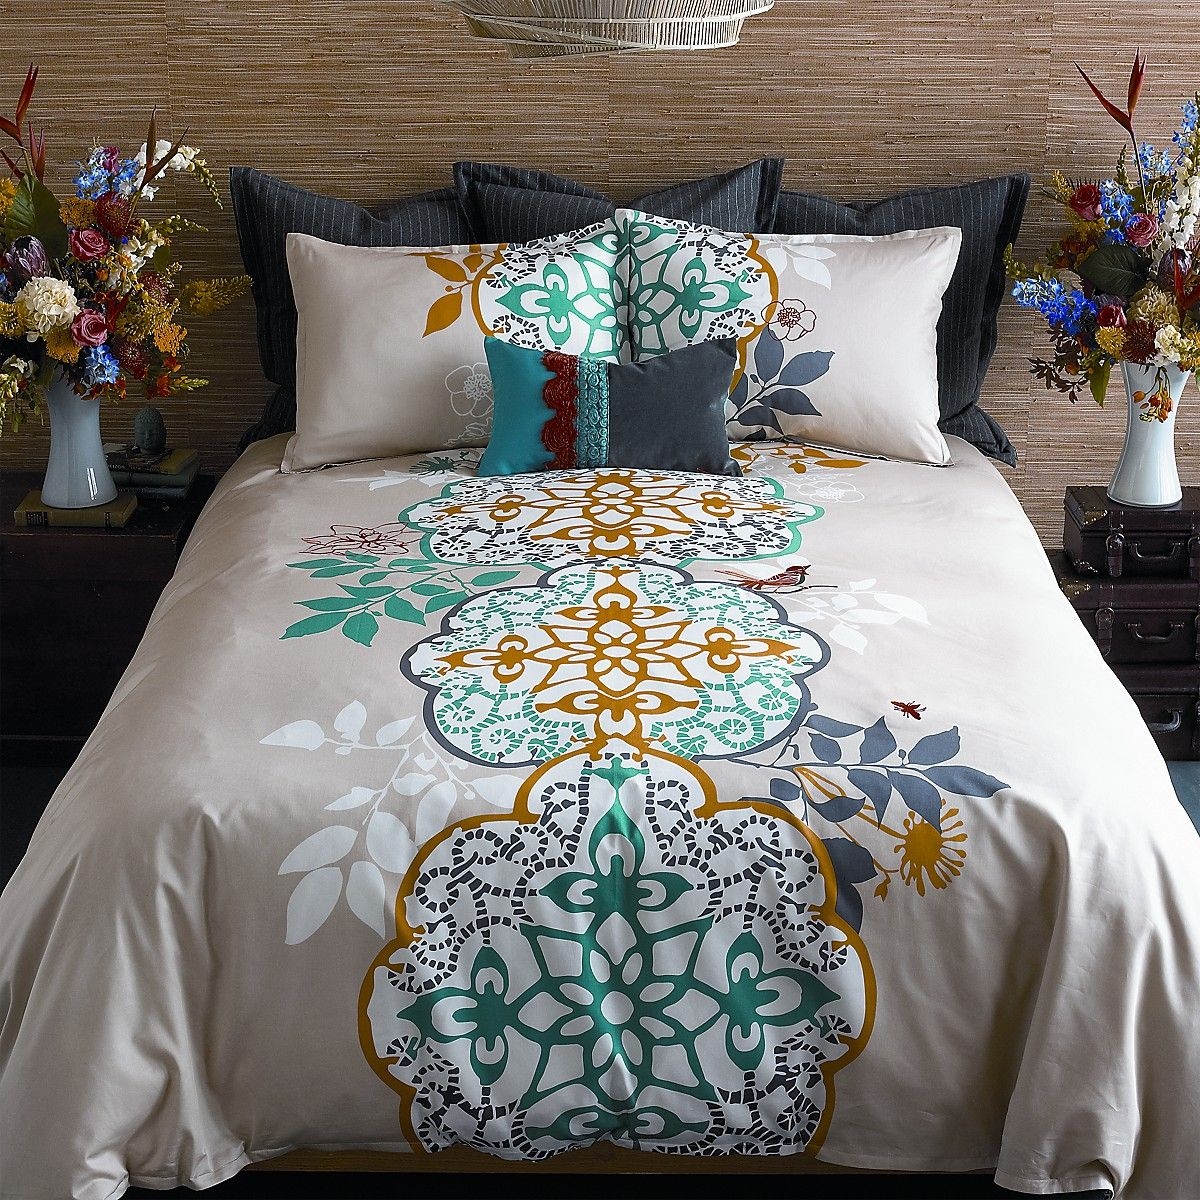 Moroccan bedspread